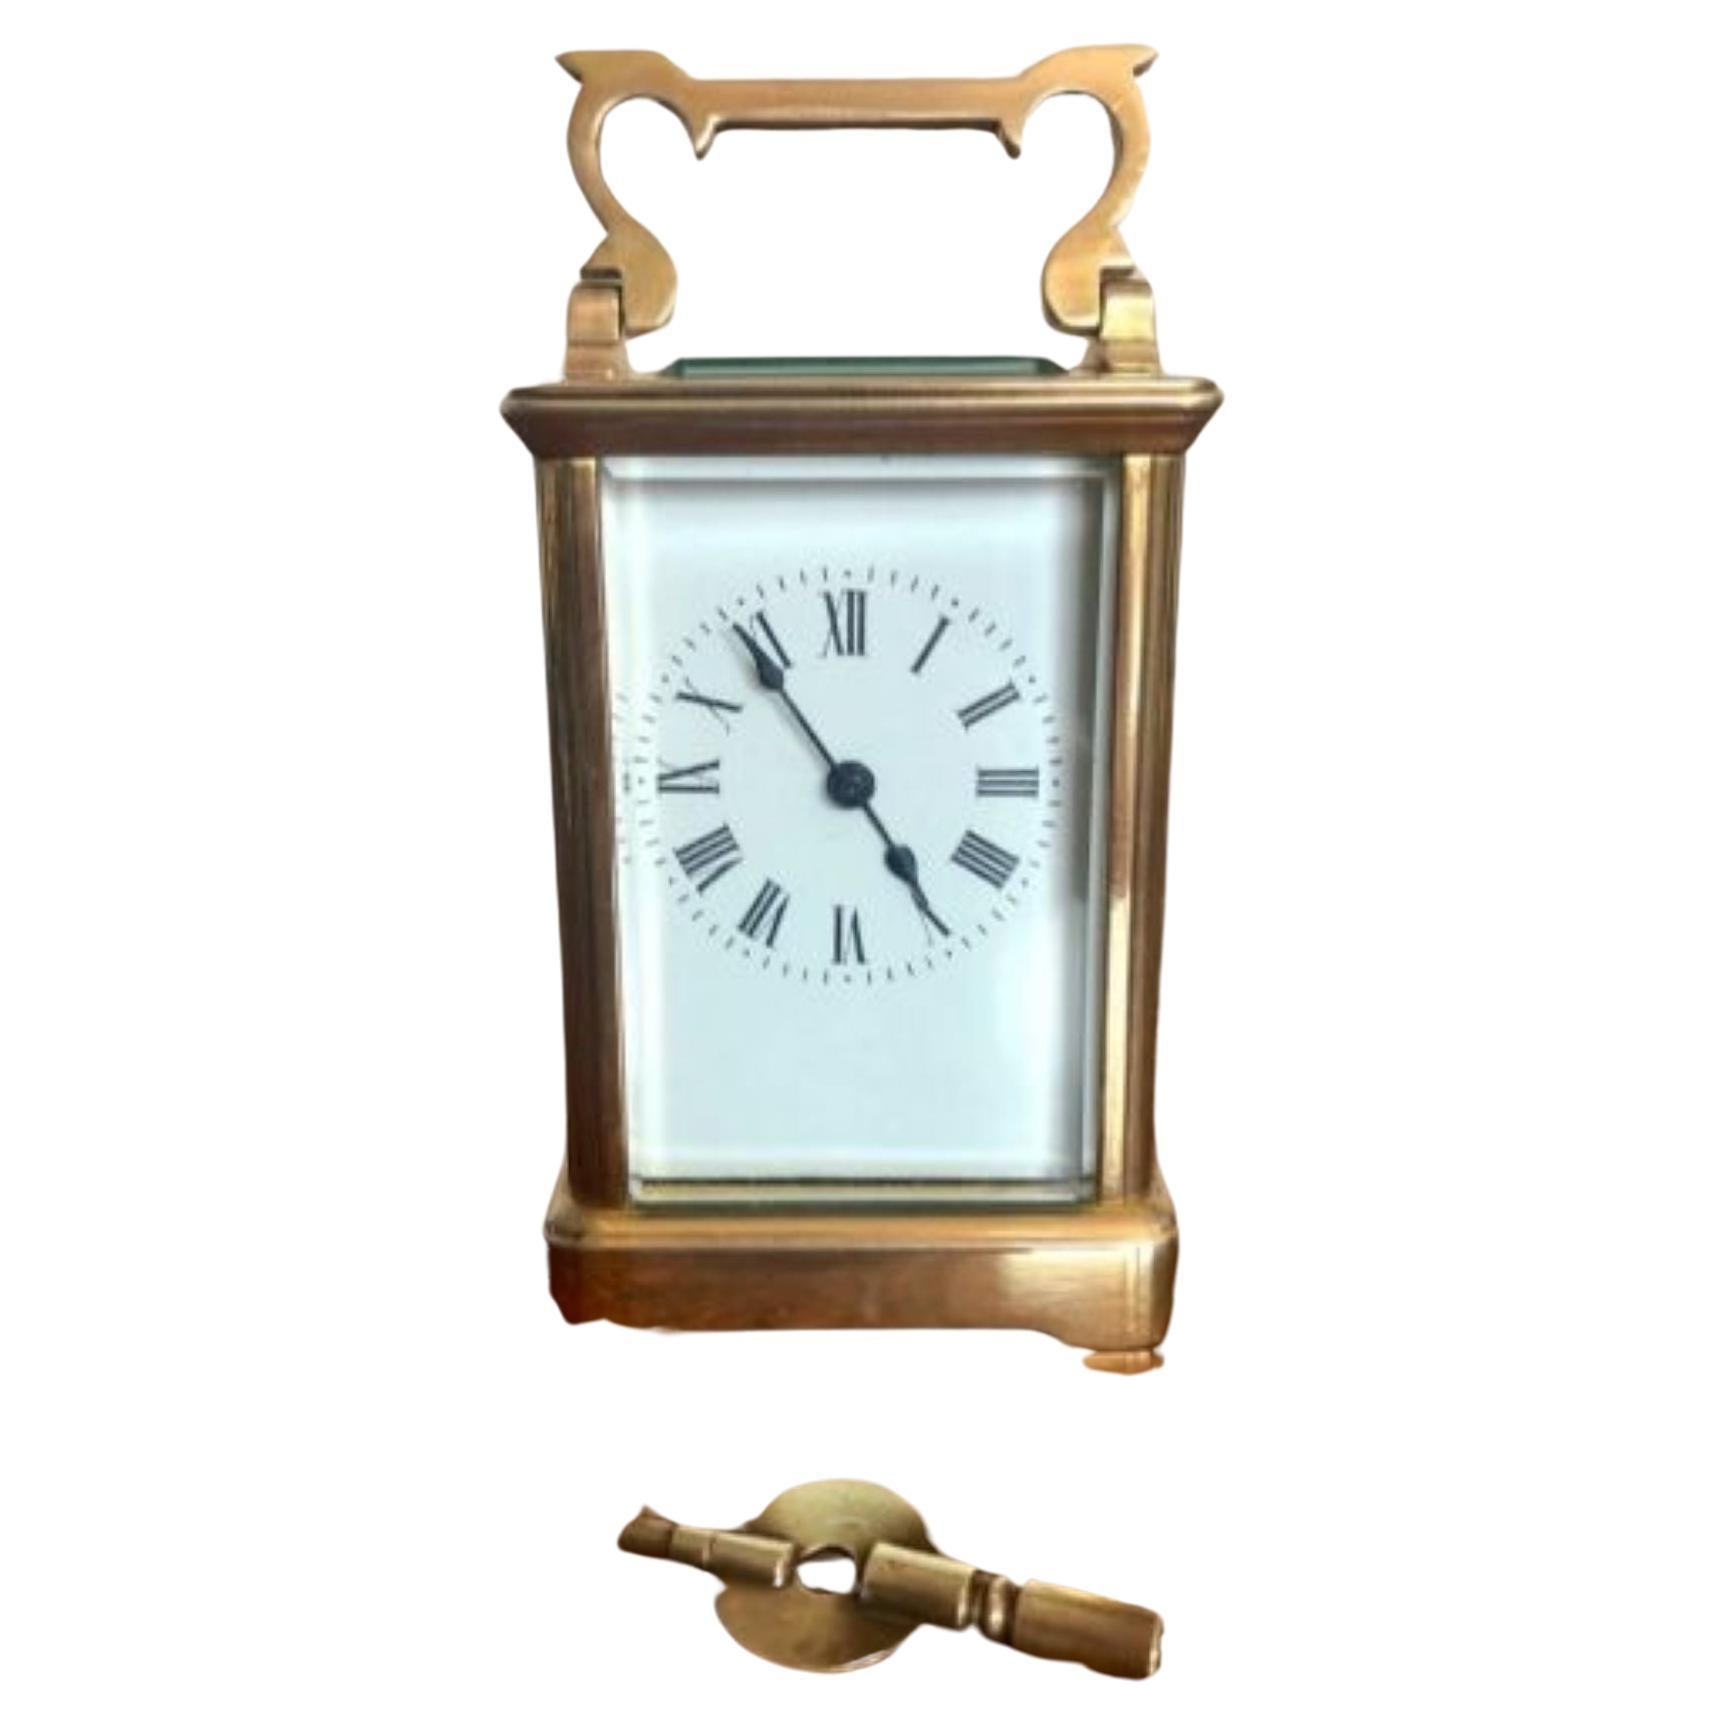 Horloge victorienne française ancienne à chariot en laiton de qualité